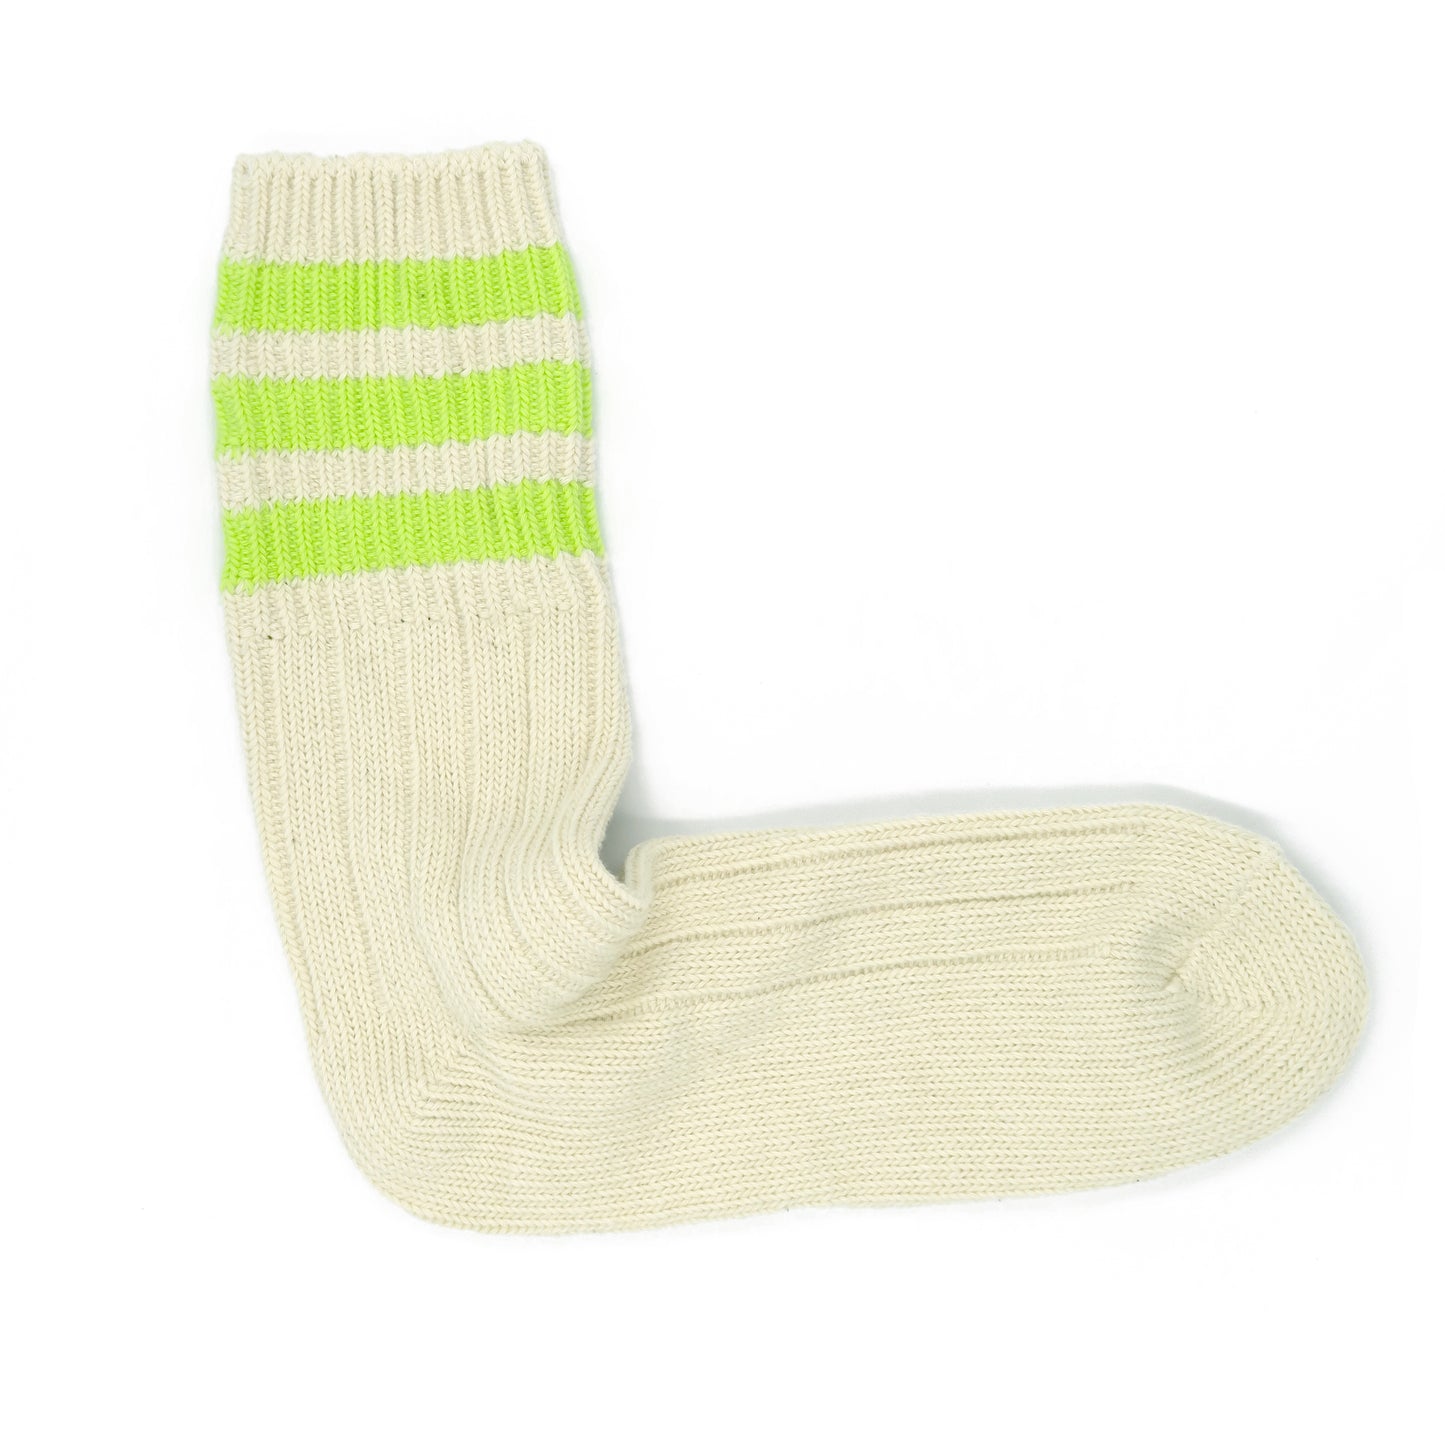 Three Striped Socks - Neon Green - Comfysocks